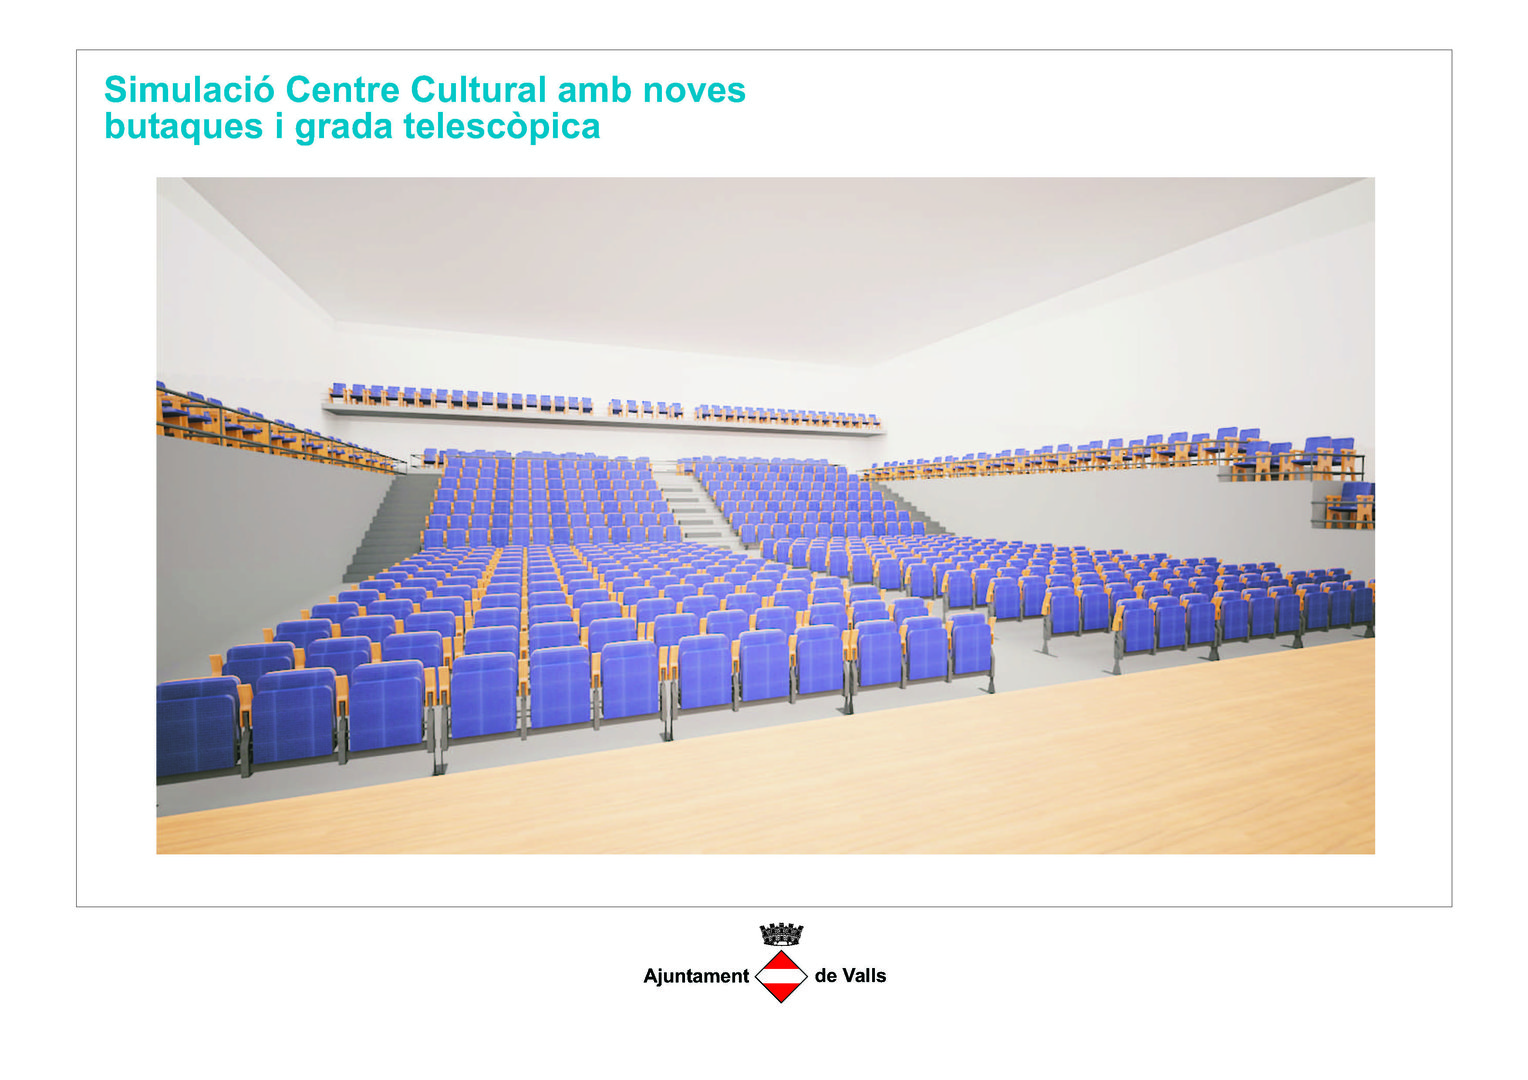 Les noves butaques i grada telescòpica del Centre Cultural s'instal·laran a l'estiu